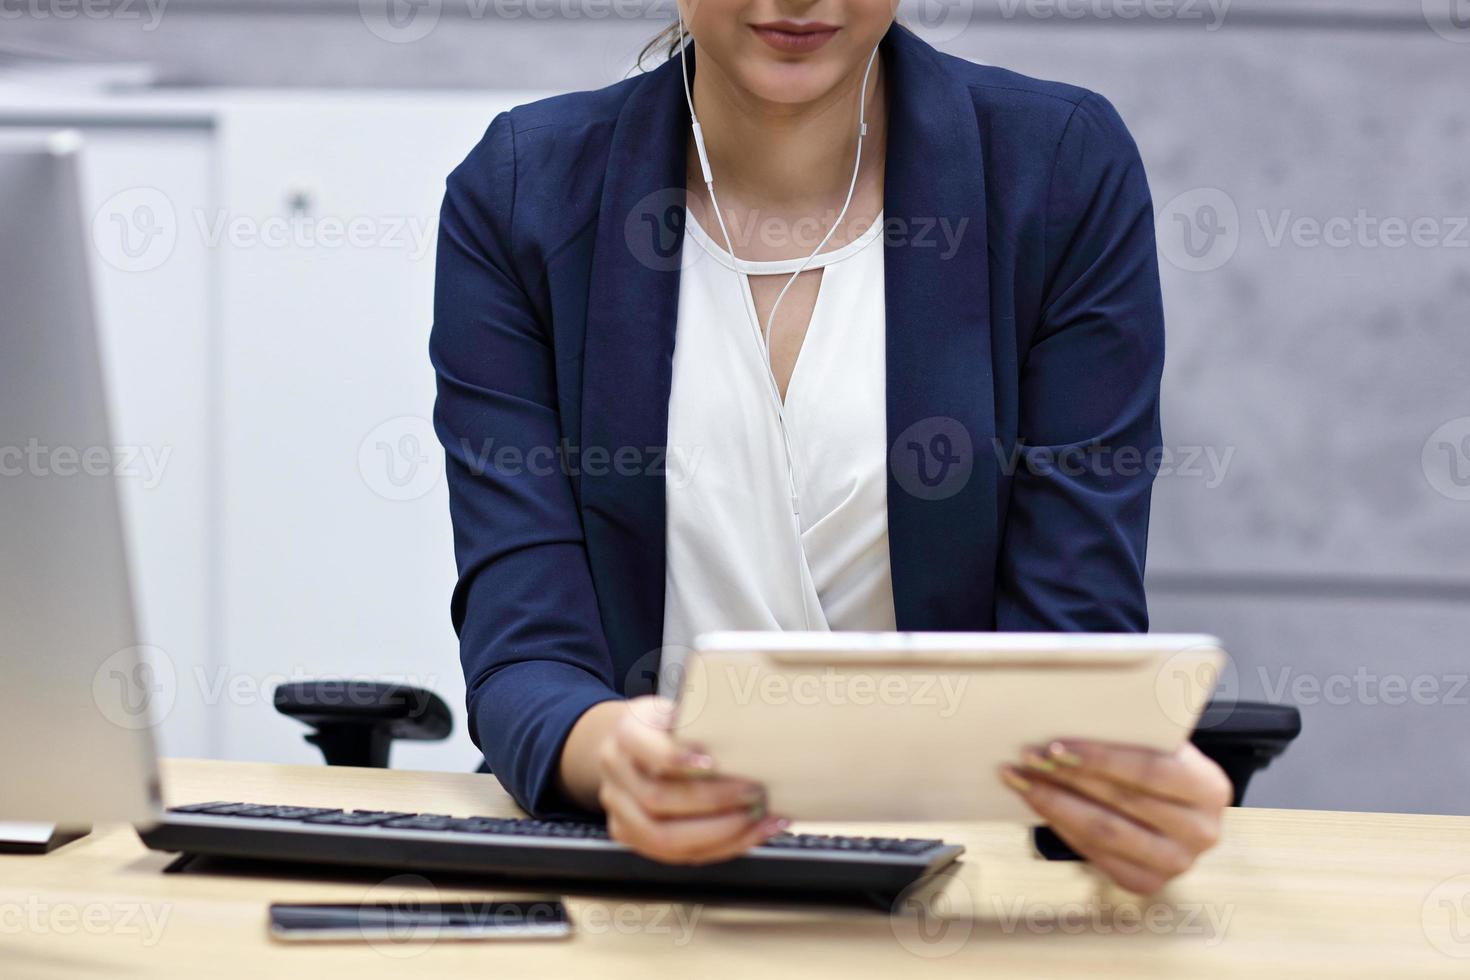 stänga upp porträtt av attraktiv leende affärskvinna på arbetsplats foto